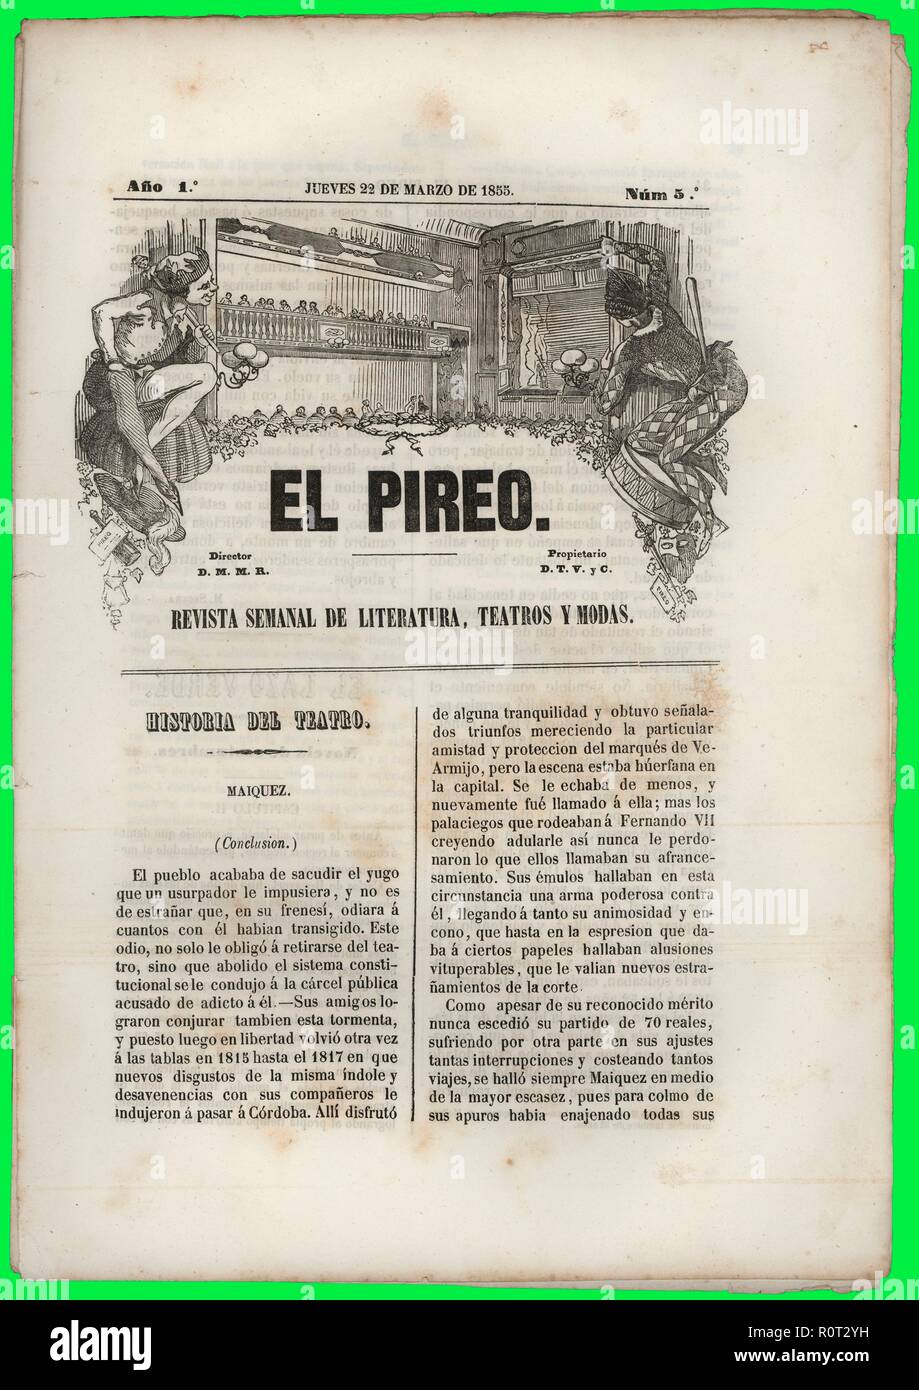 Portada de la revista de literatura, teatro y moda El Piero, editada en Barcelona, marzo de 1855. Stock Photo